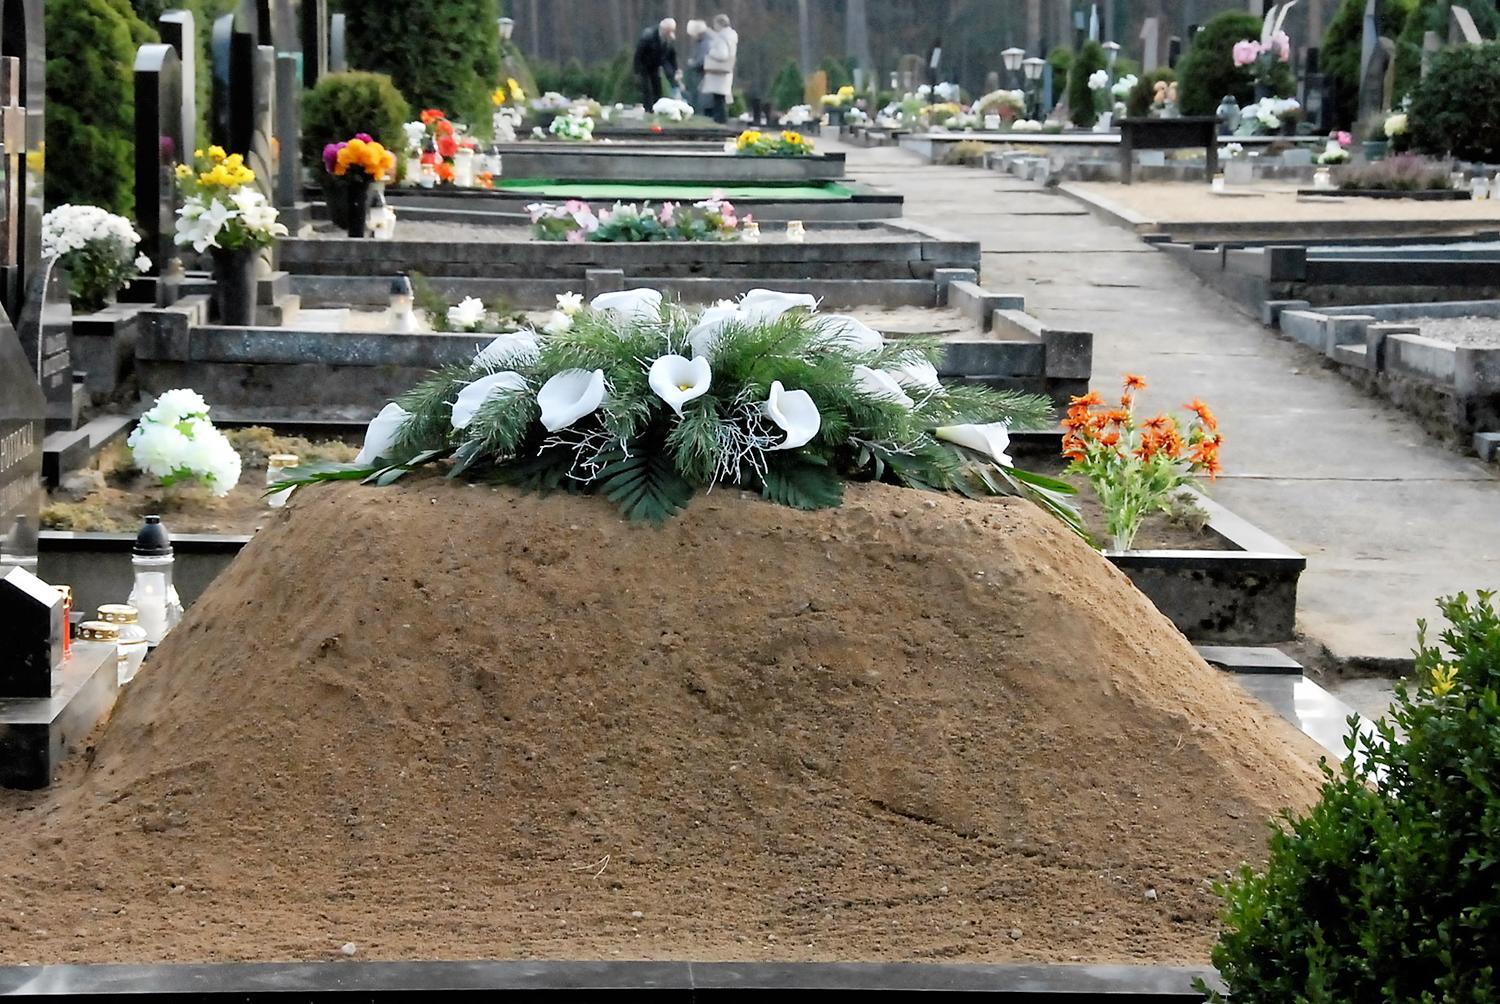 Vieni kitus įspėja – nuo kapų dingsta gėlės / Nuo kapų dingta ne tik žvakės ir gėlių krepšeliai